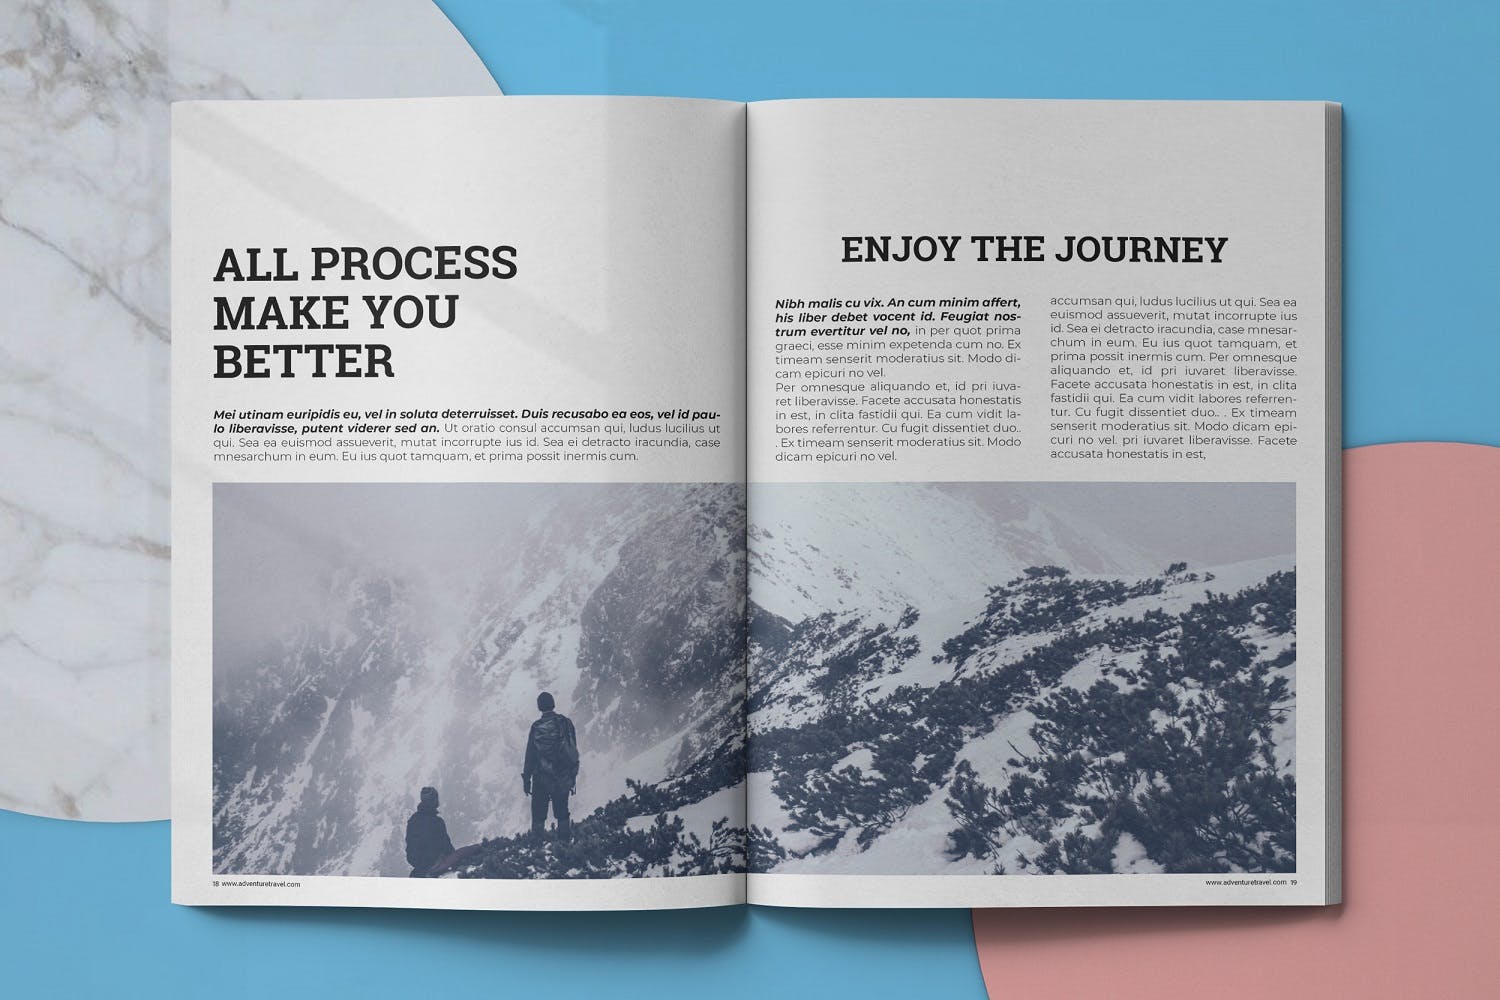 冒险旅行主题第一素材精选杂志排版设计模板 Adventure Travel Magazine Template插图(9)